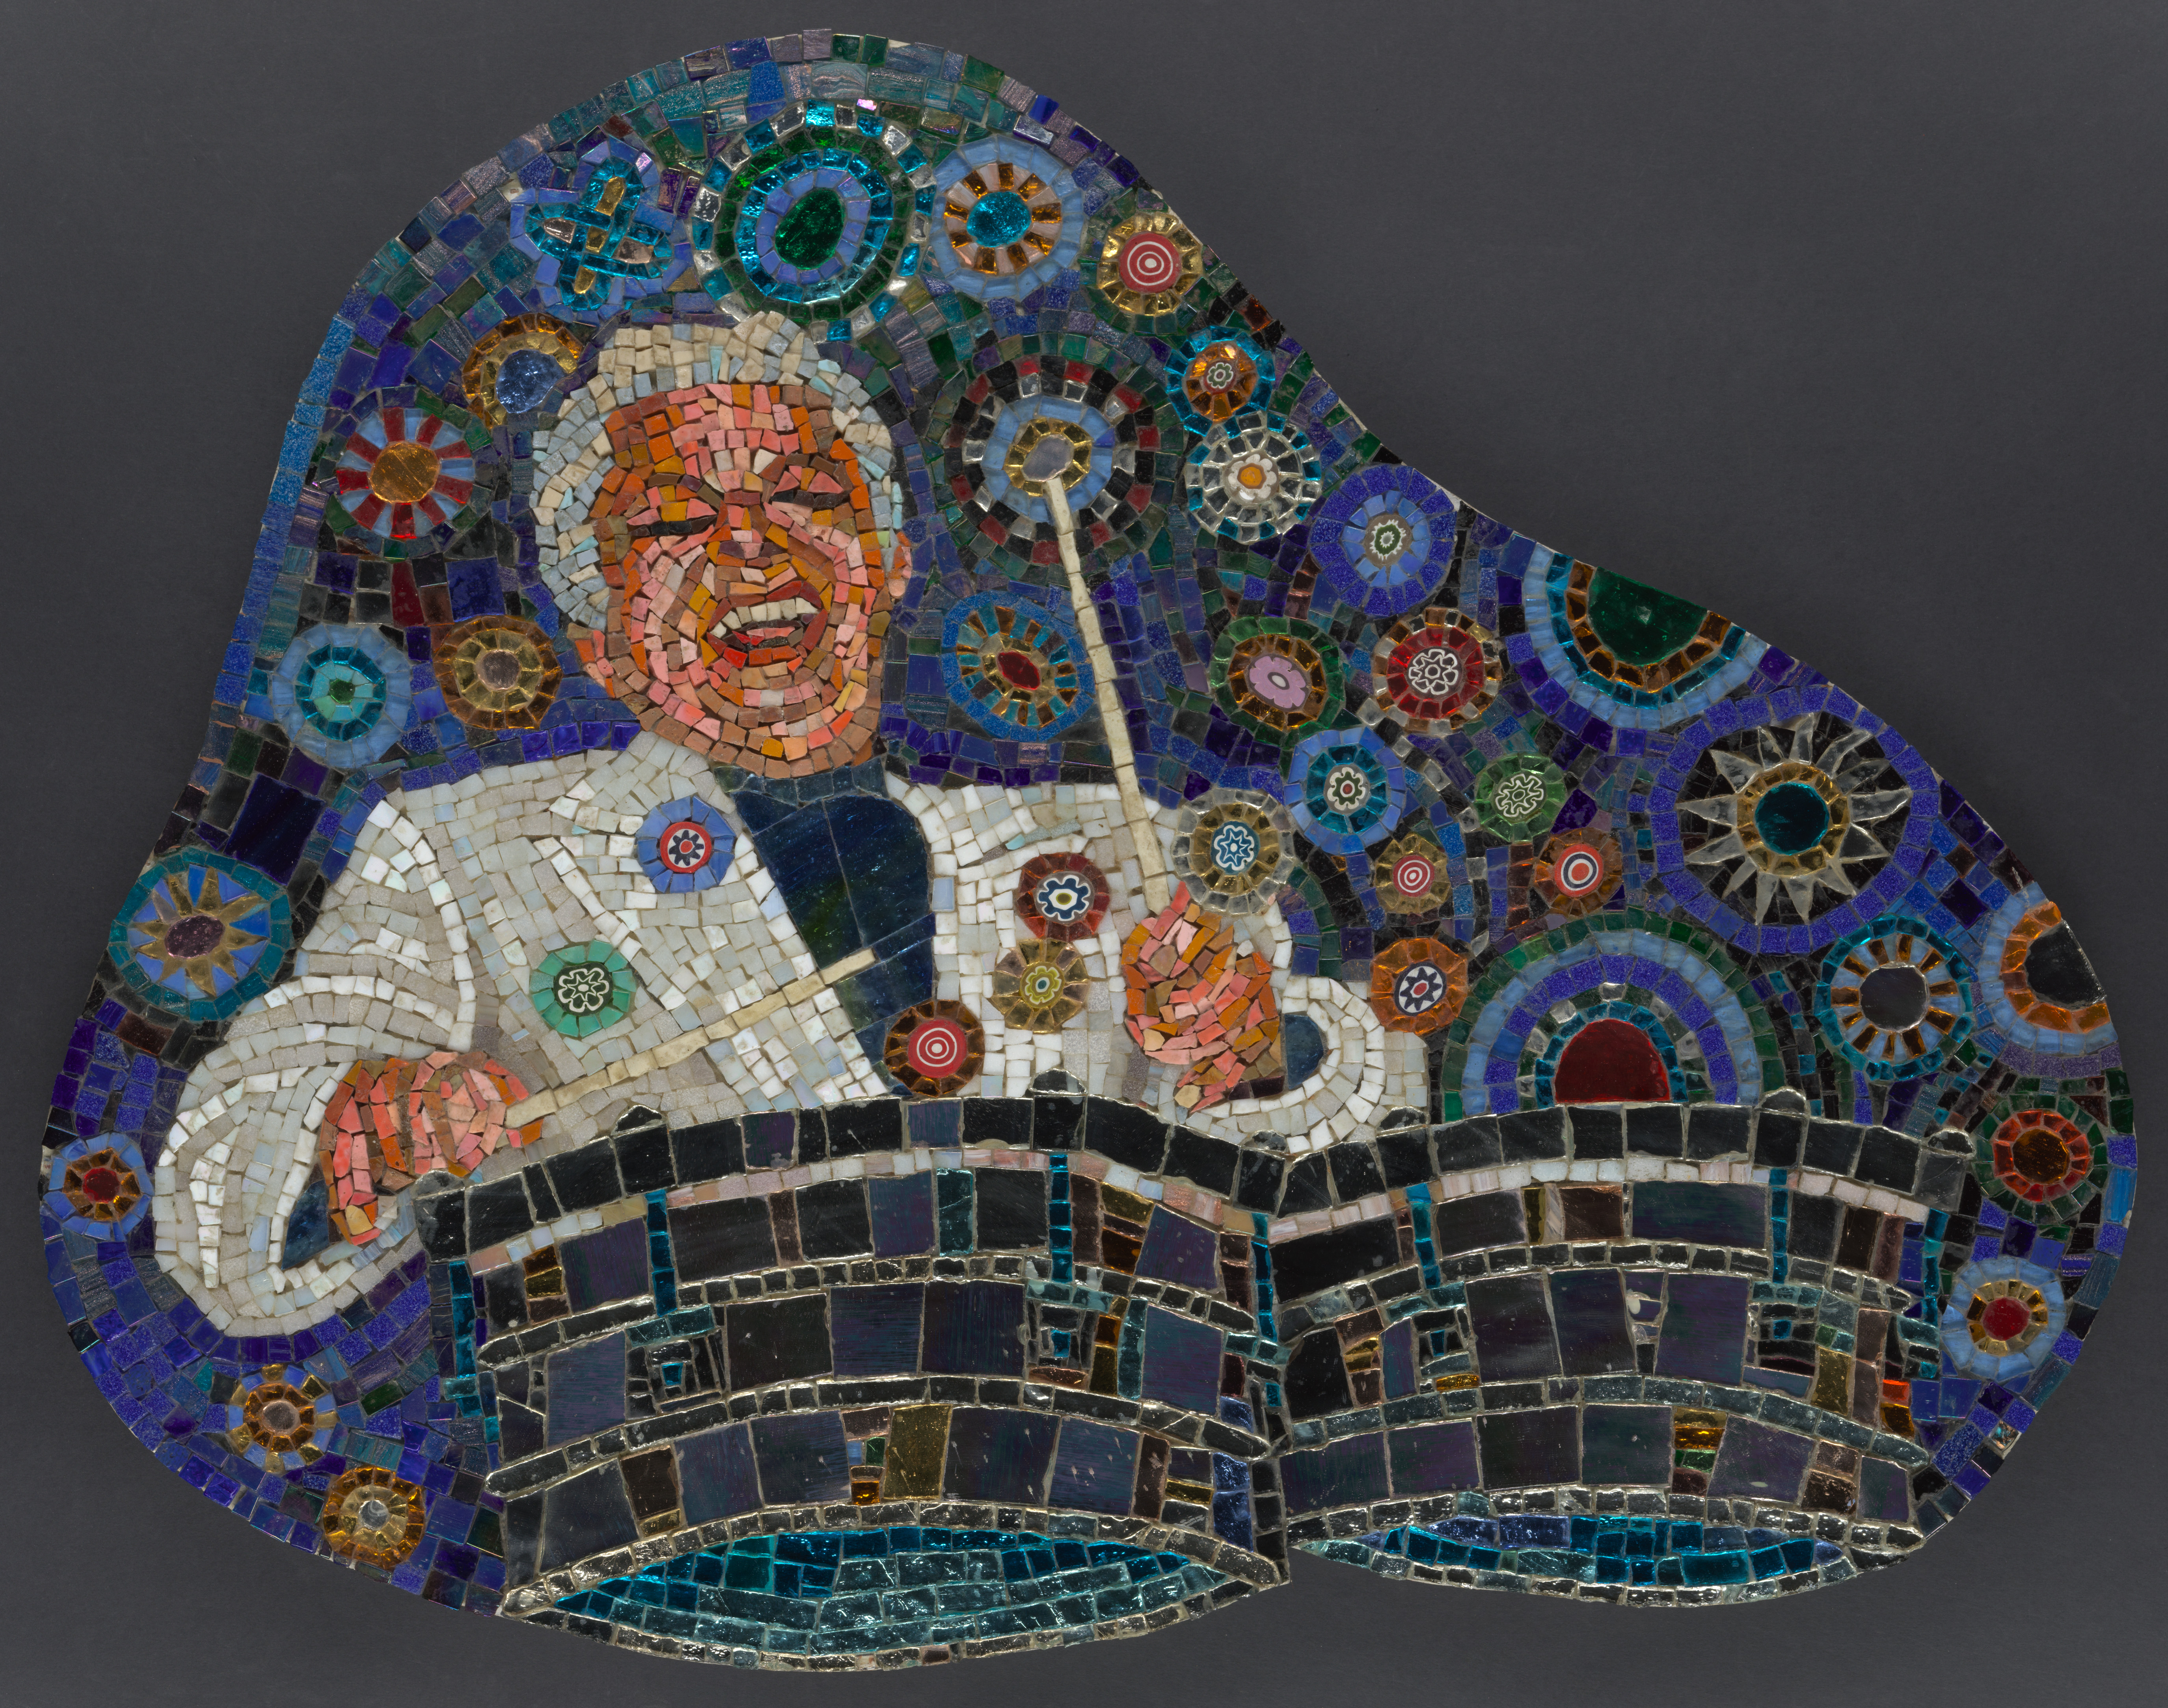 파란색 배경에 다양한 색상의 원으로 가득 찬 드럼을 연주하며 활기찬 미소를 짓고 있는 유명한 음악가 티토 푸엔테(Tito Puente)의 모자이크 이미지가 있습니다.